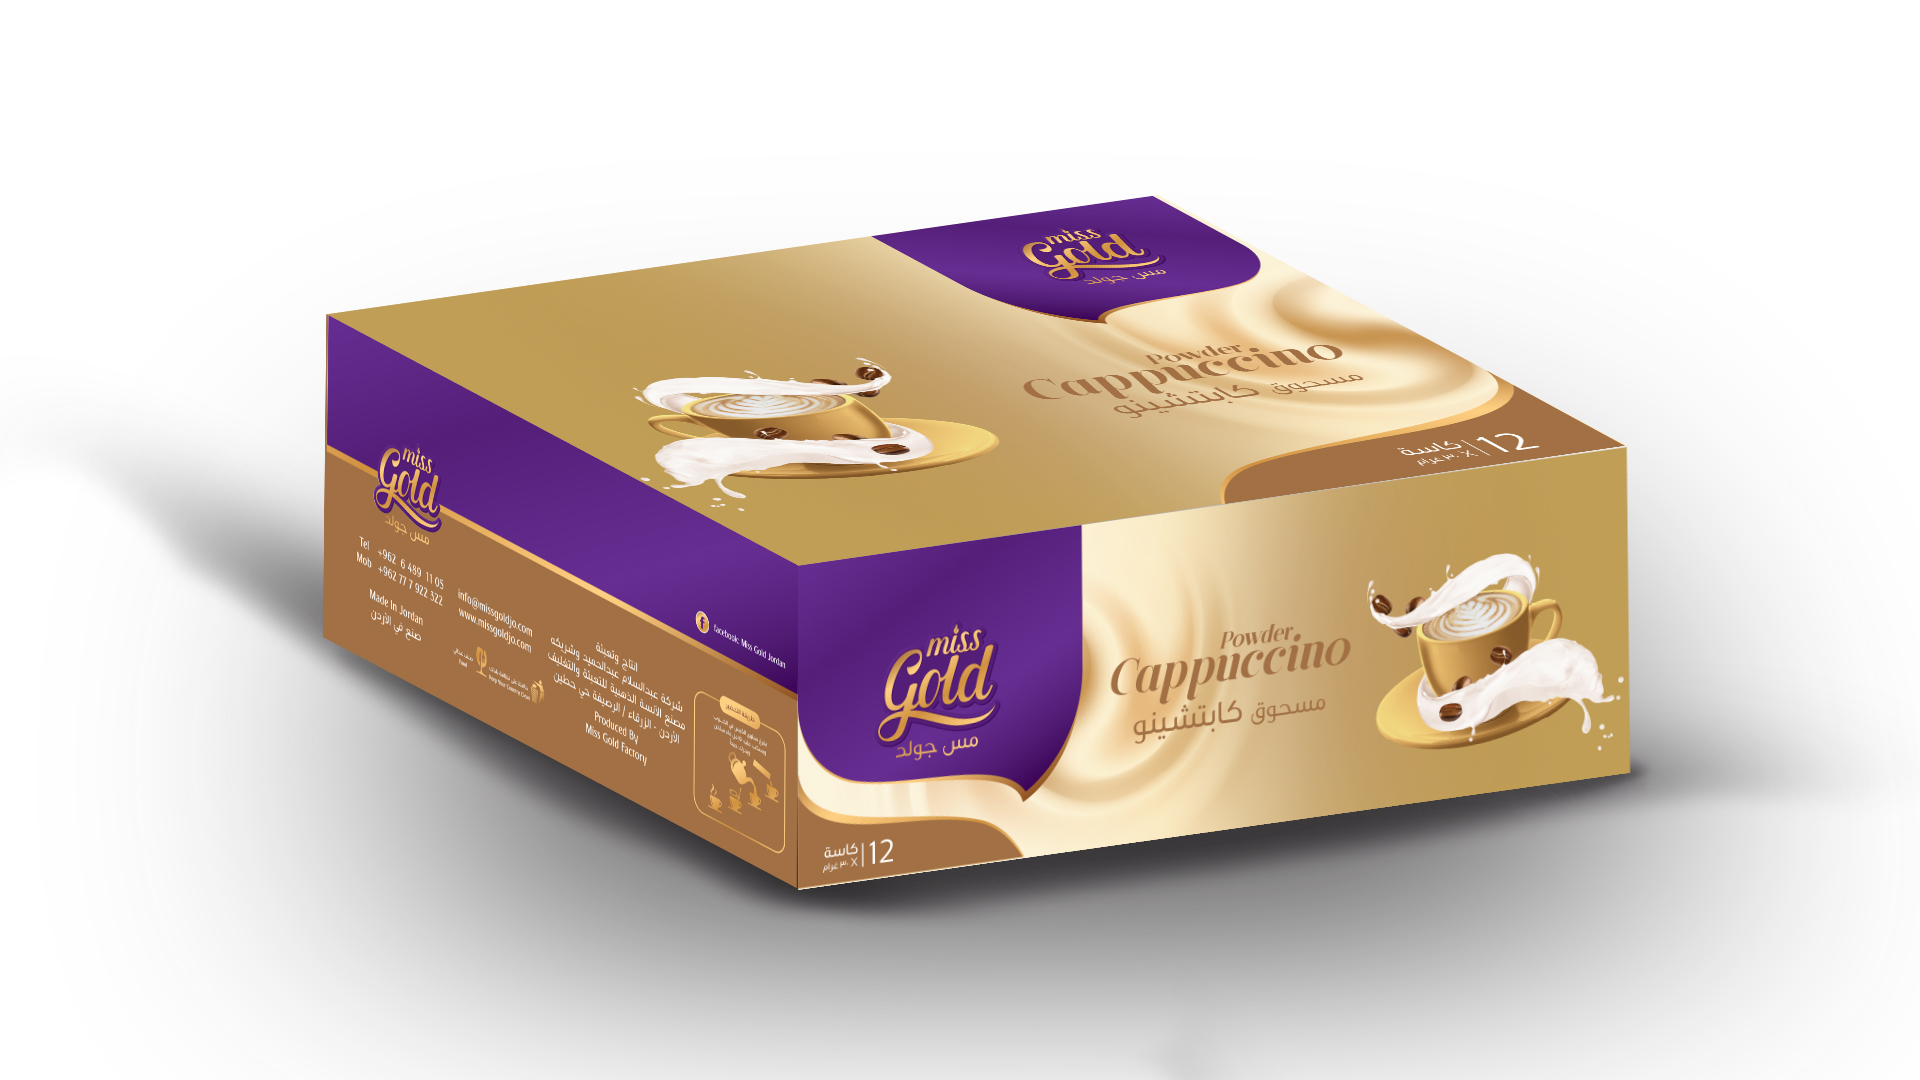 Cappuccino Gold (Cups Box)